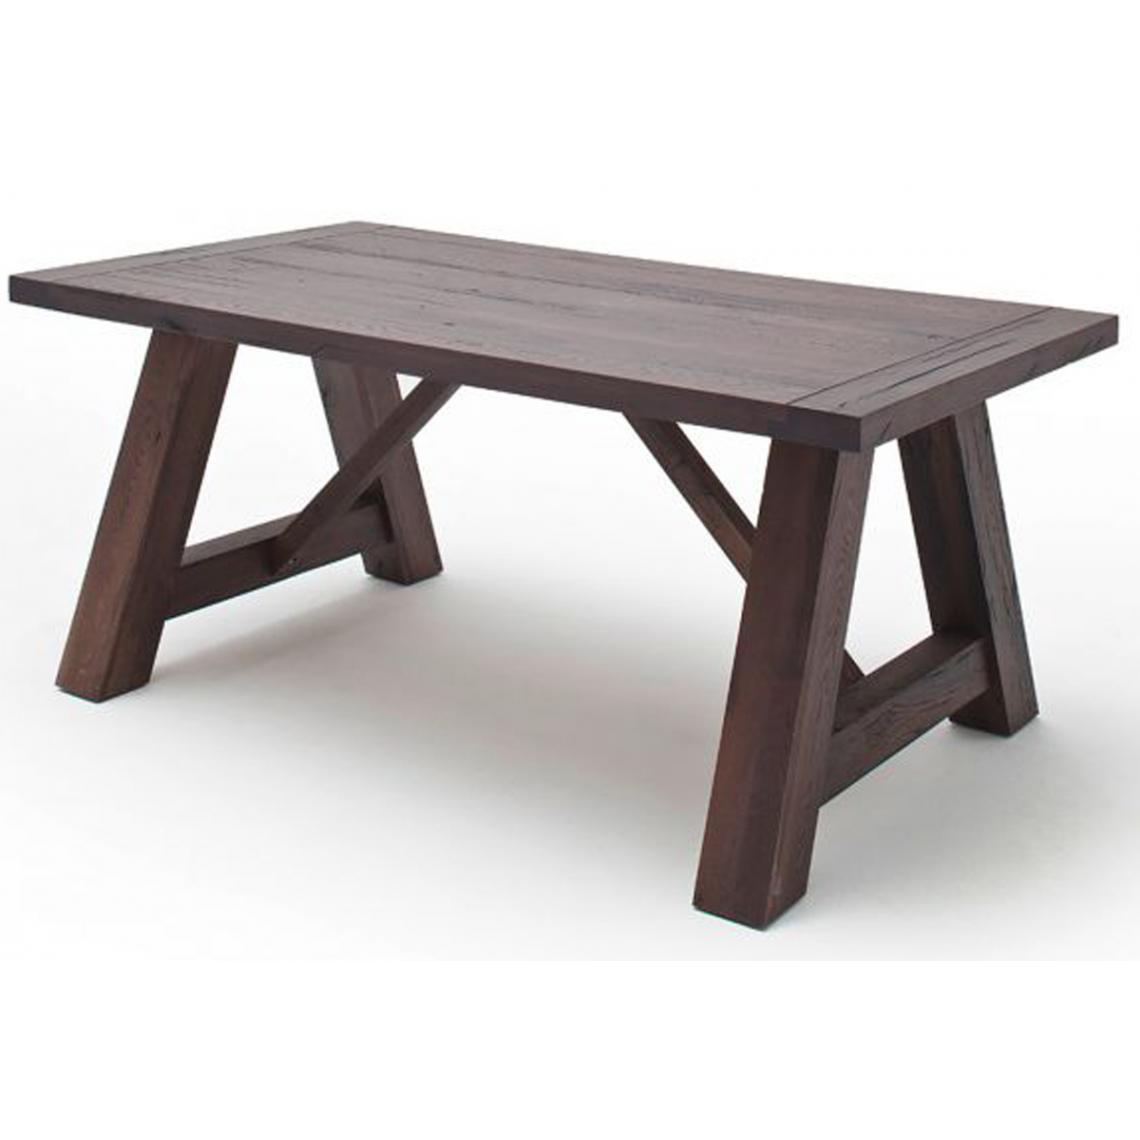 Pegane - Table à manger en chêne massif vieilli laqué mat - L.180 x H.76 x P.100 cm -PEGANE- - Tables à manger